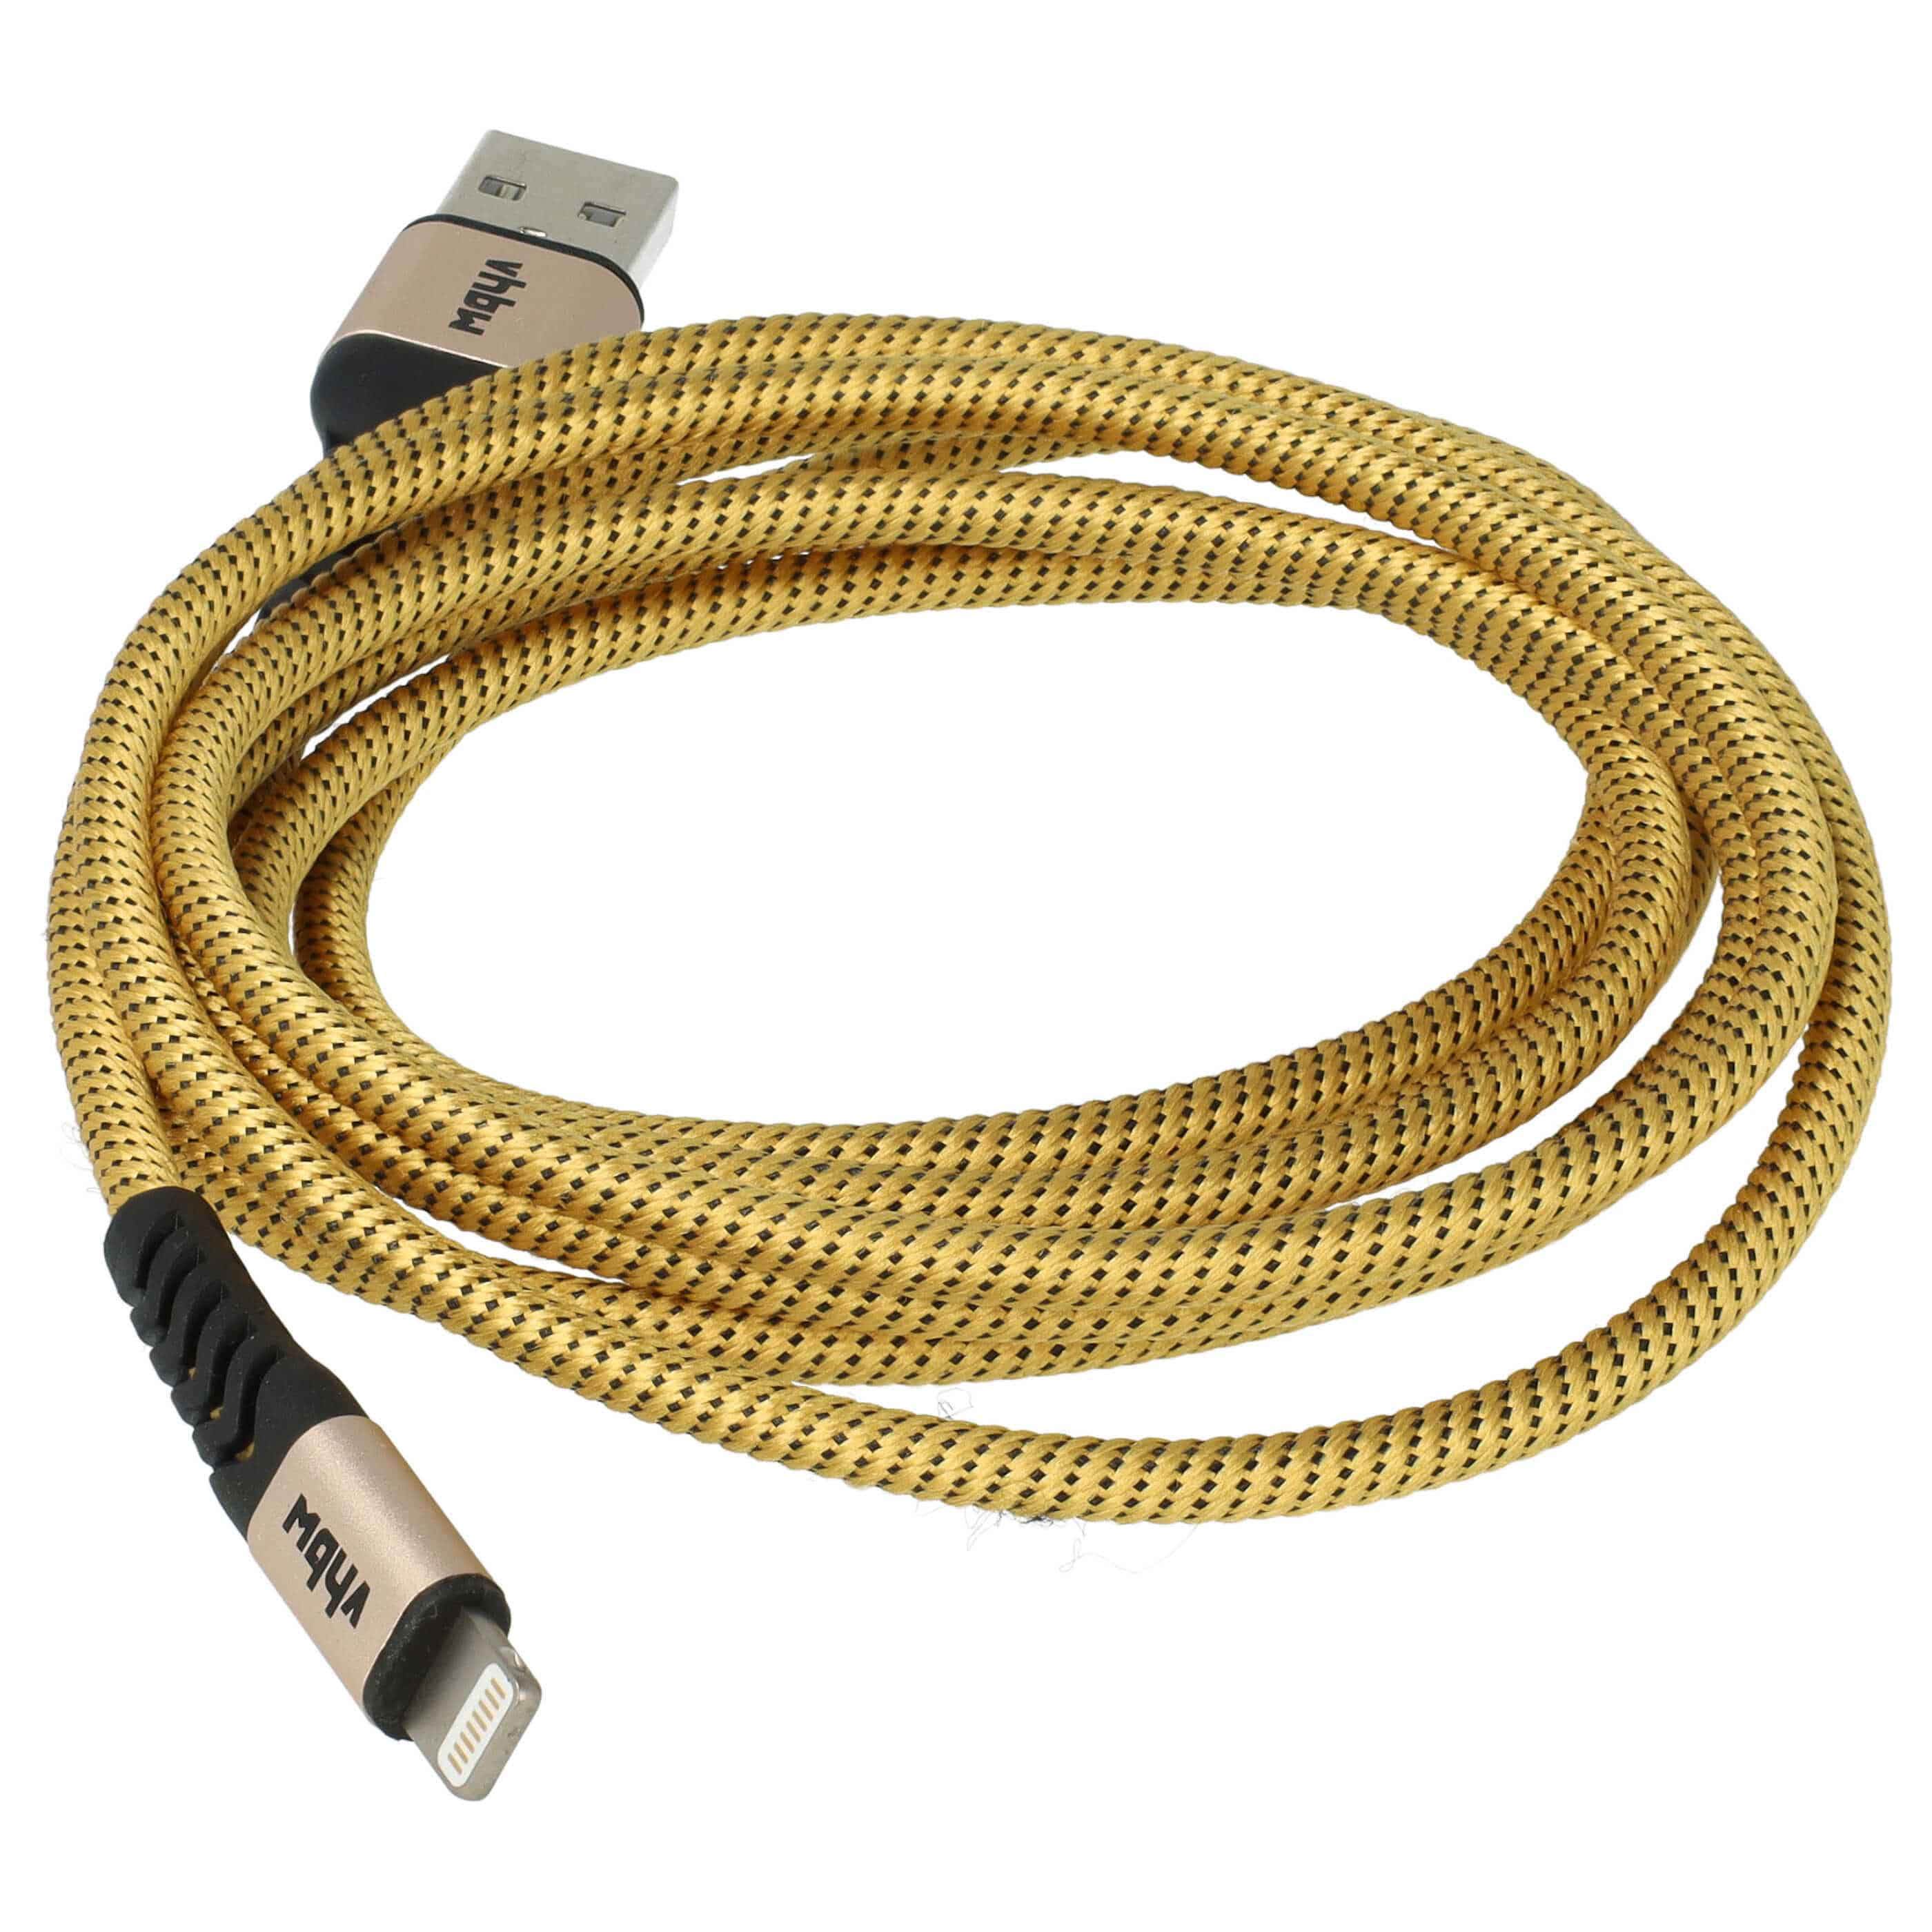 2x Kabel Lightning USB A do urządzeń iOS 1. generacji - czarny / żółty, 180 cm 